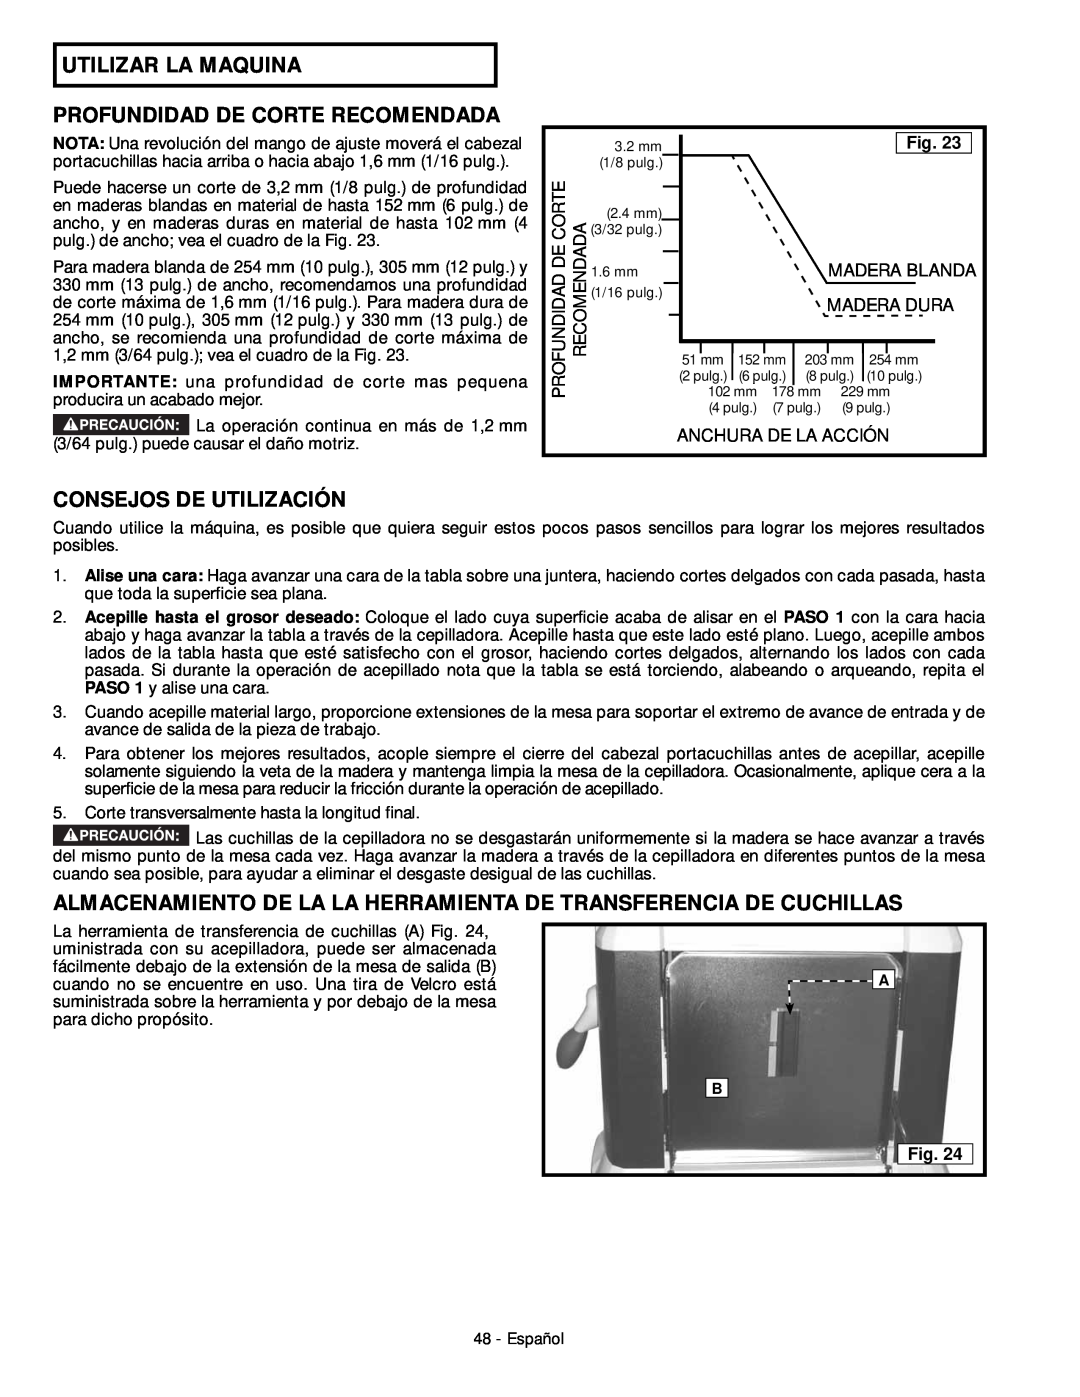 DeWalt 18657 instruction manual Utilizar La Maquina Profundidad De Corte Recomendada, Consejos De Utilización 